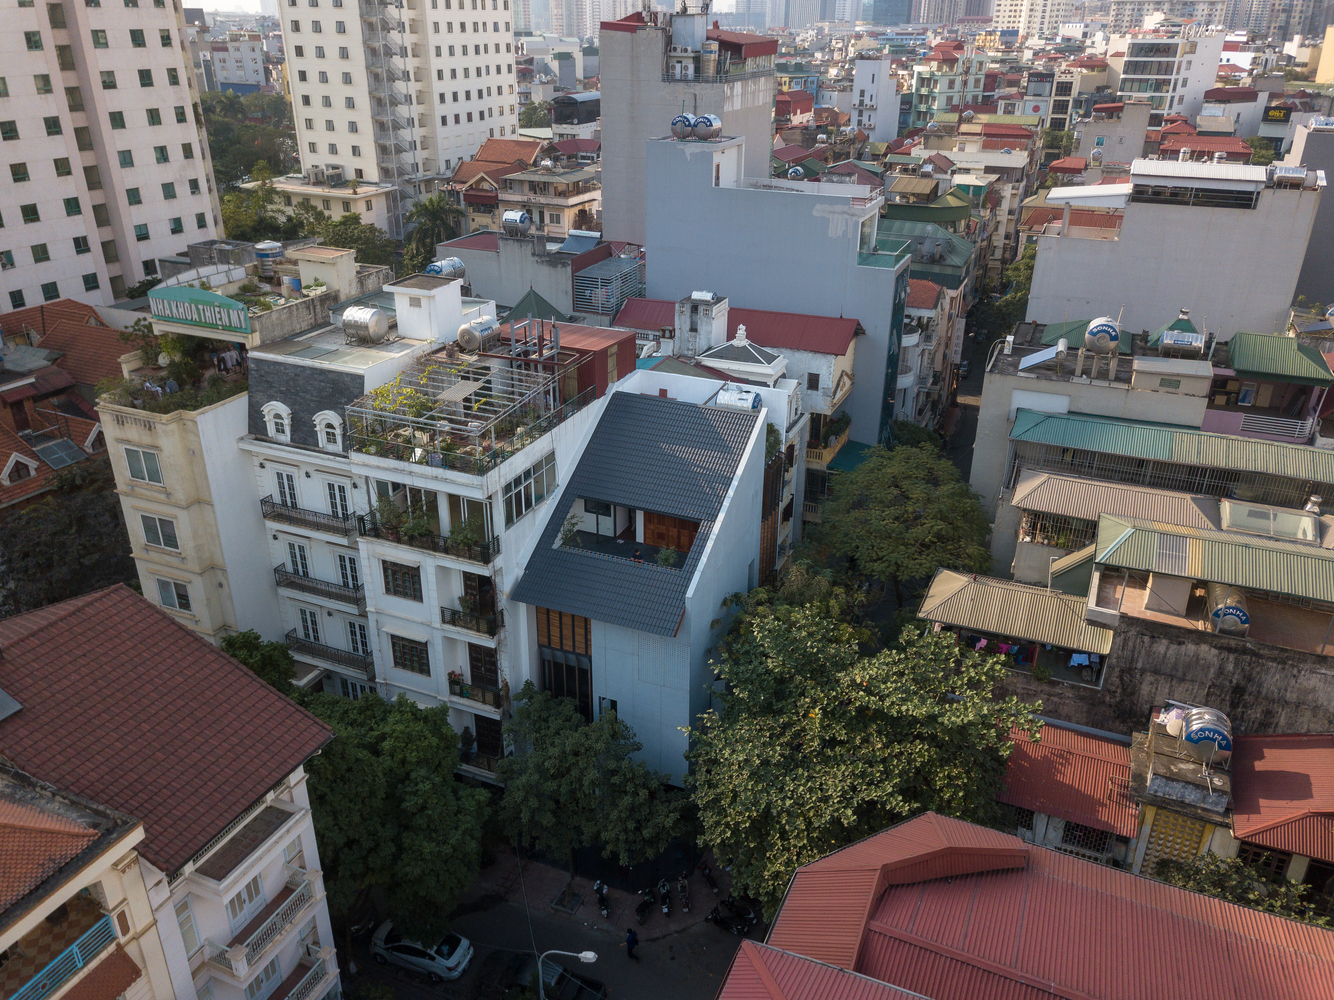 Hình ảnh ngôi nhà góc phố Hà Nội nhìn từ trên cao 